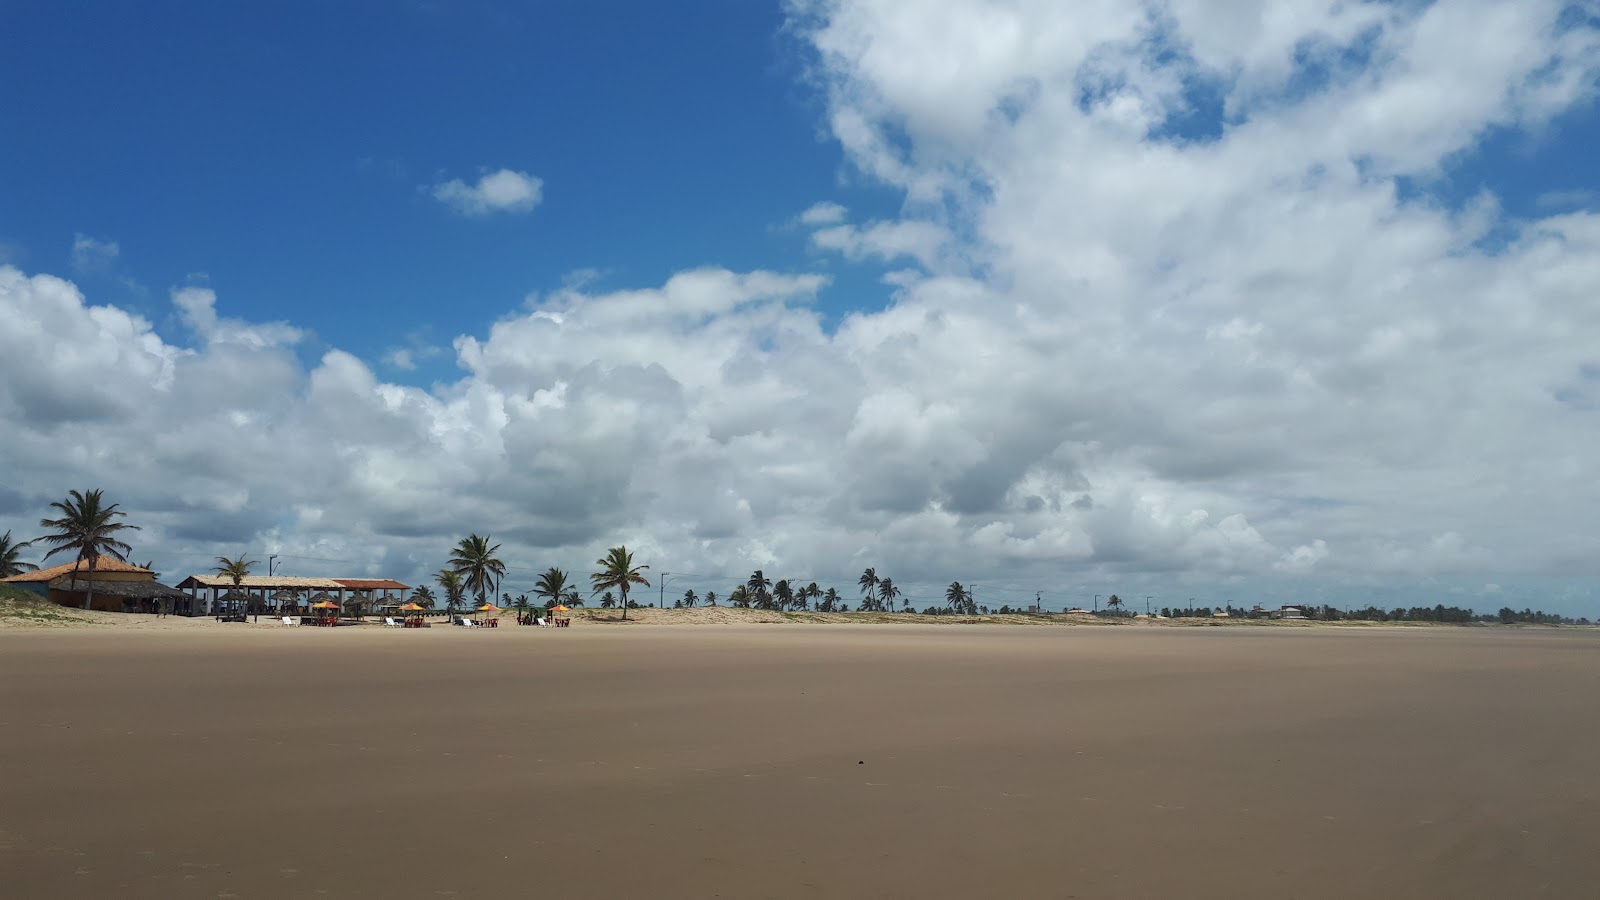 Foto af Praia do Mosqueiro - populært sted blandt afslapningskendere